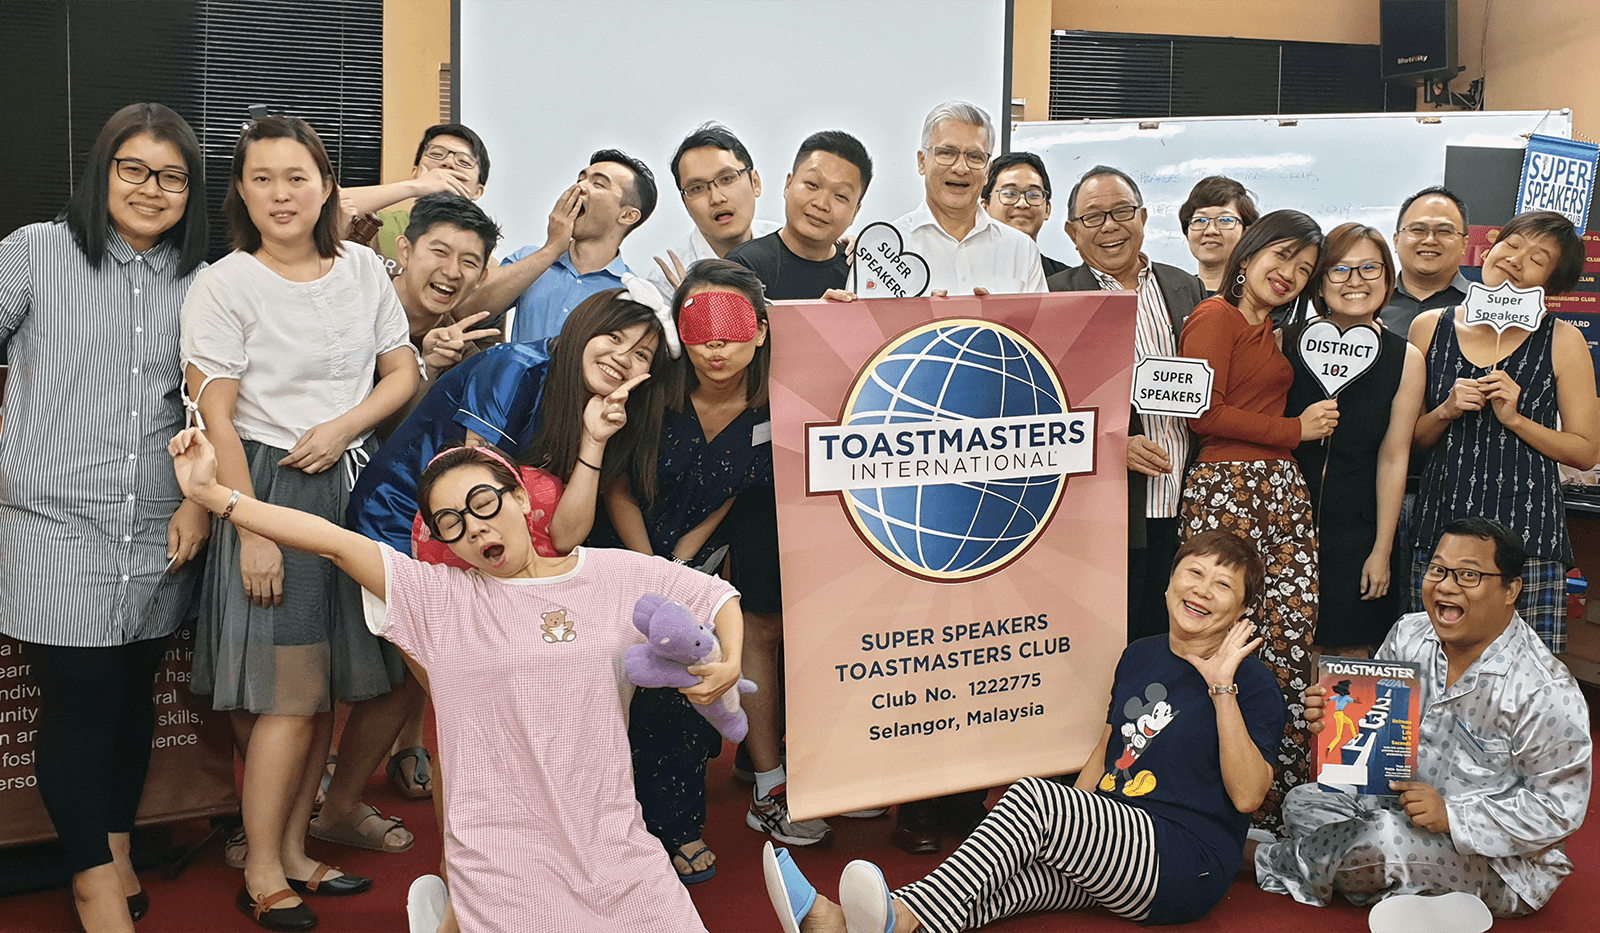 Toastmasters dressed in sleepwear during themed meeting